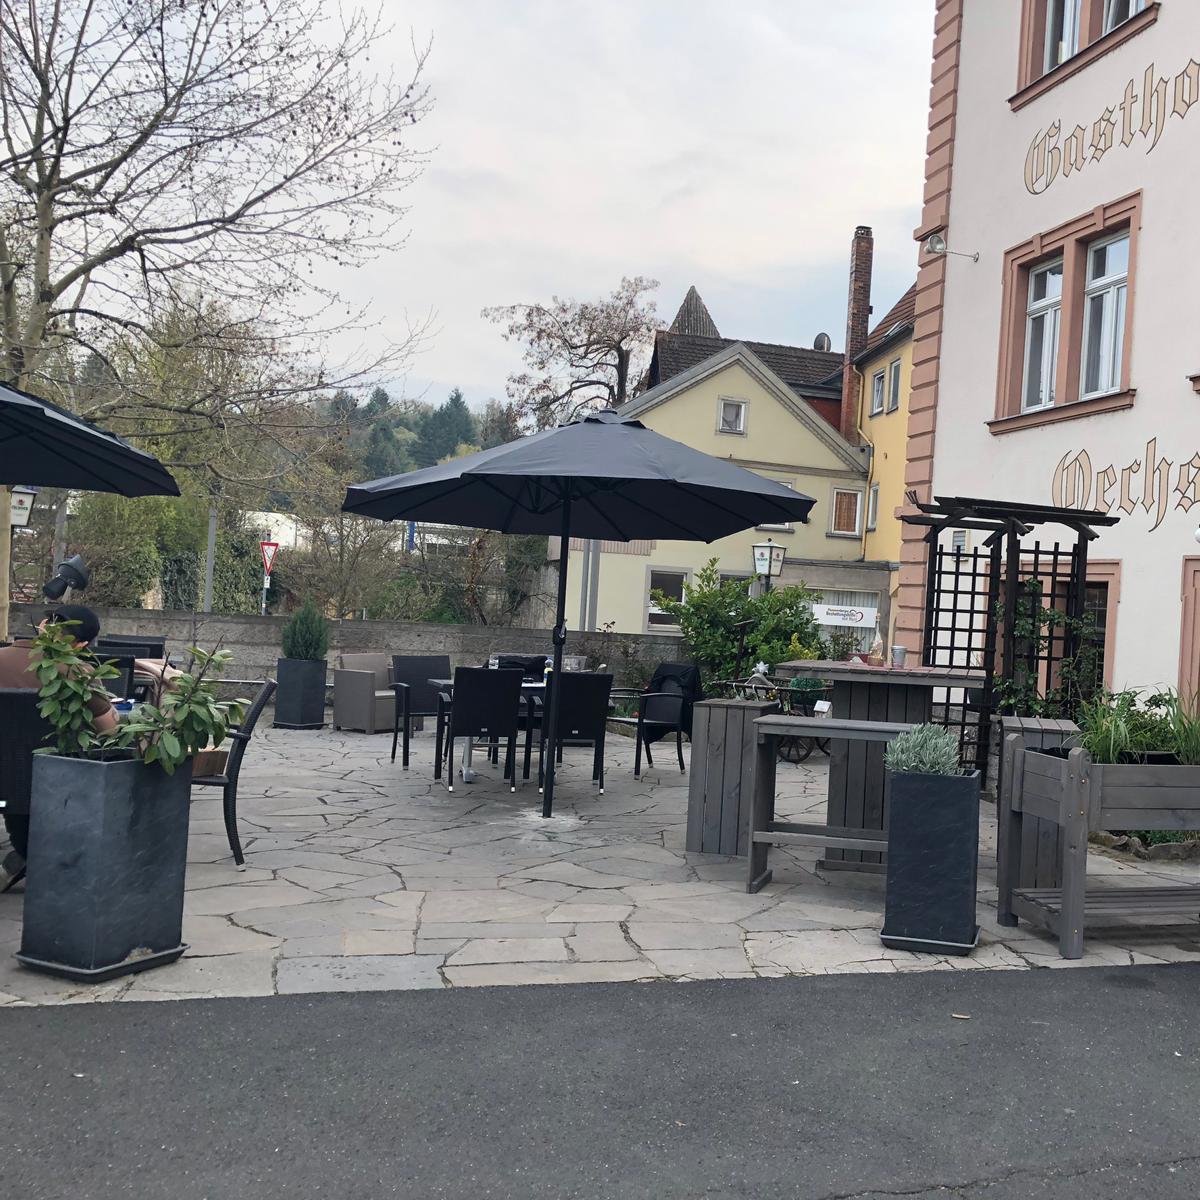 Restaurant "Gasthof Bären" in  Ochsenfurt